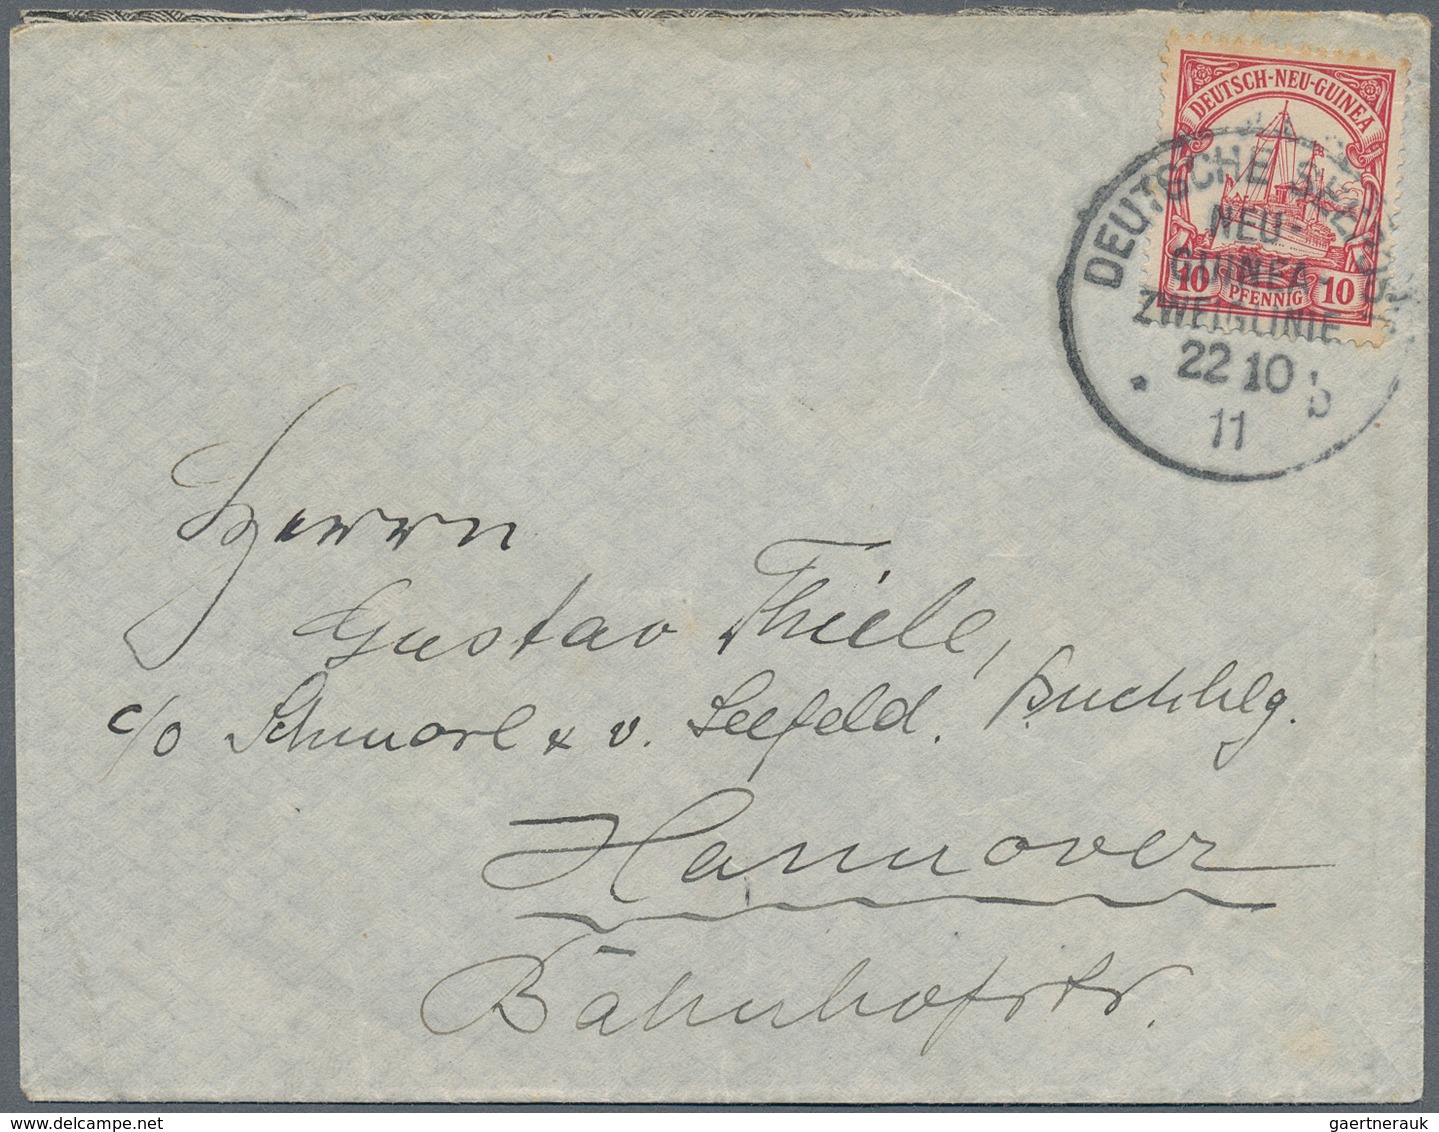 Deutsch-Neuguinea - Stempel: 1911 (22.10.), "DEUTSCHE SEEPOST NEU-GUINEA-ZWEIGLINIE B" (= Dampfer "P - German New Guinea